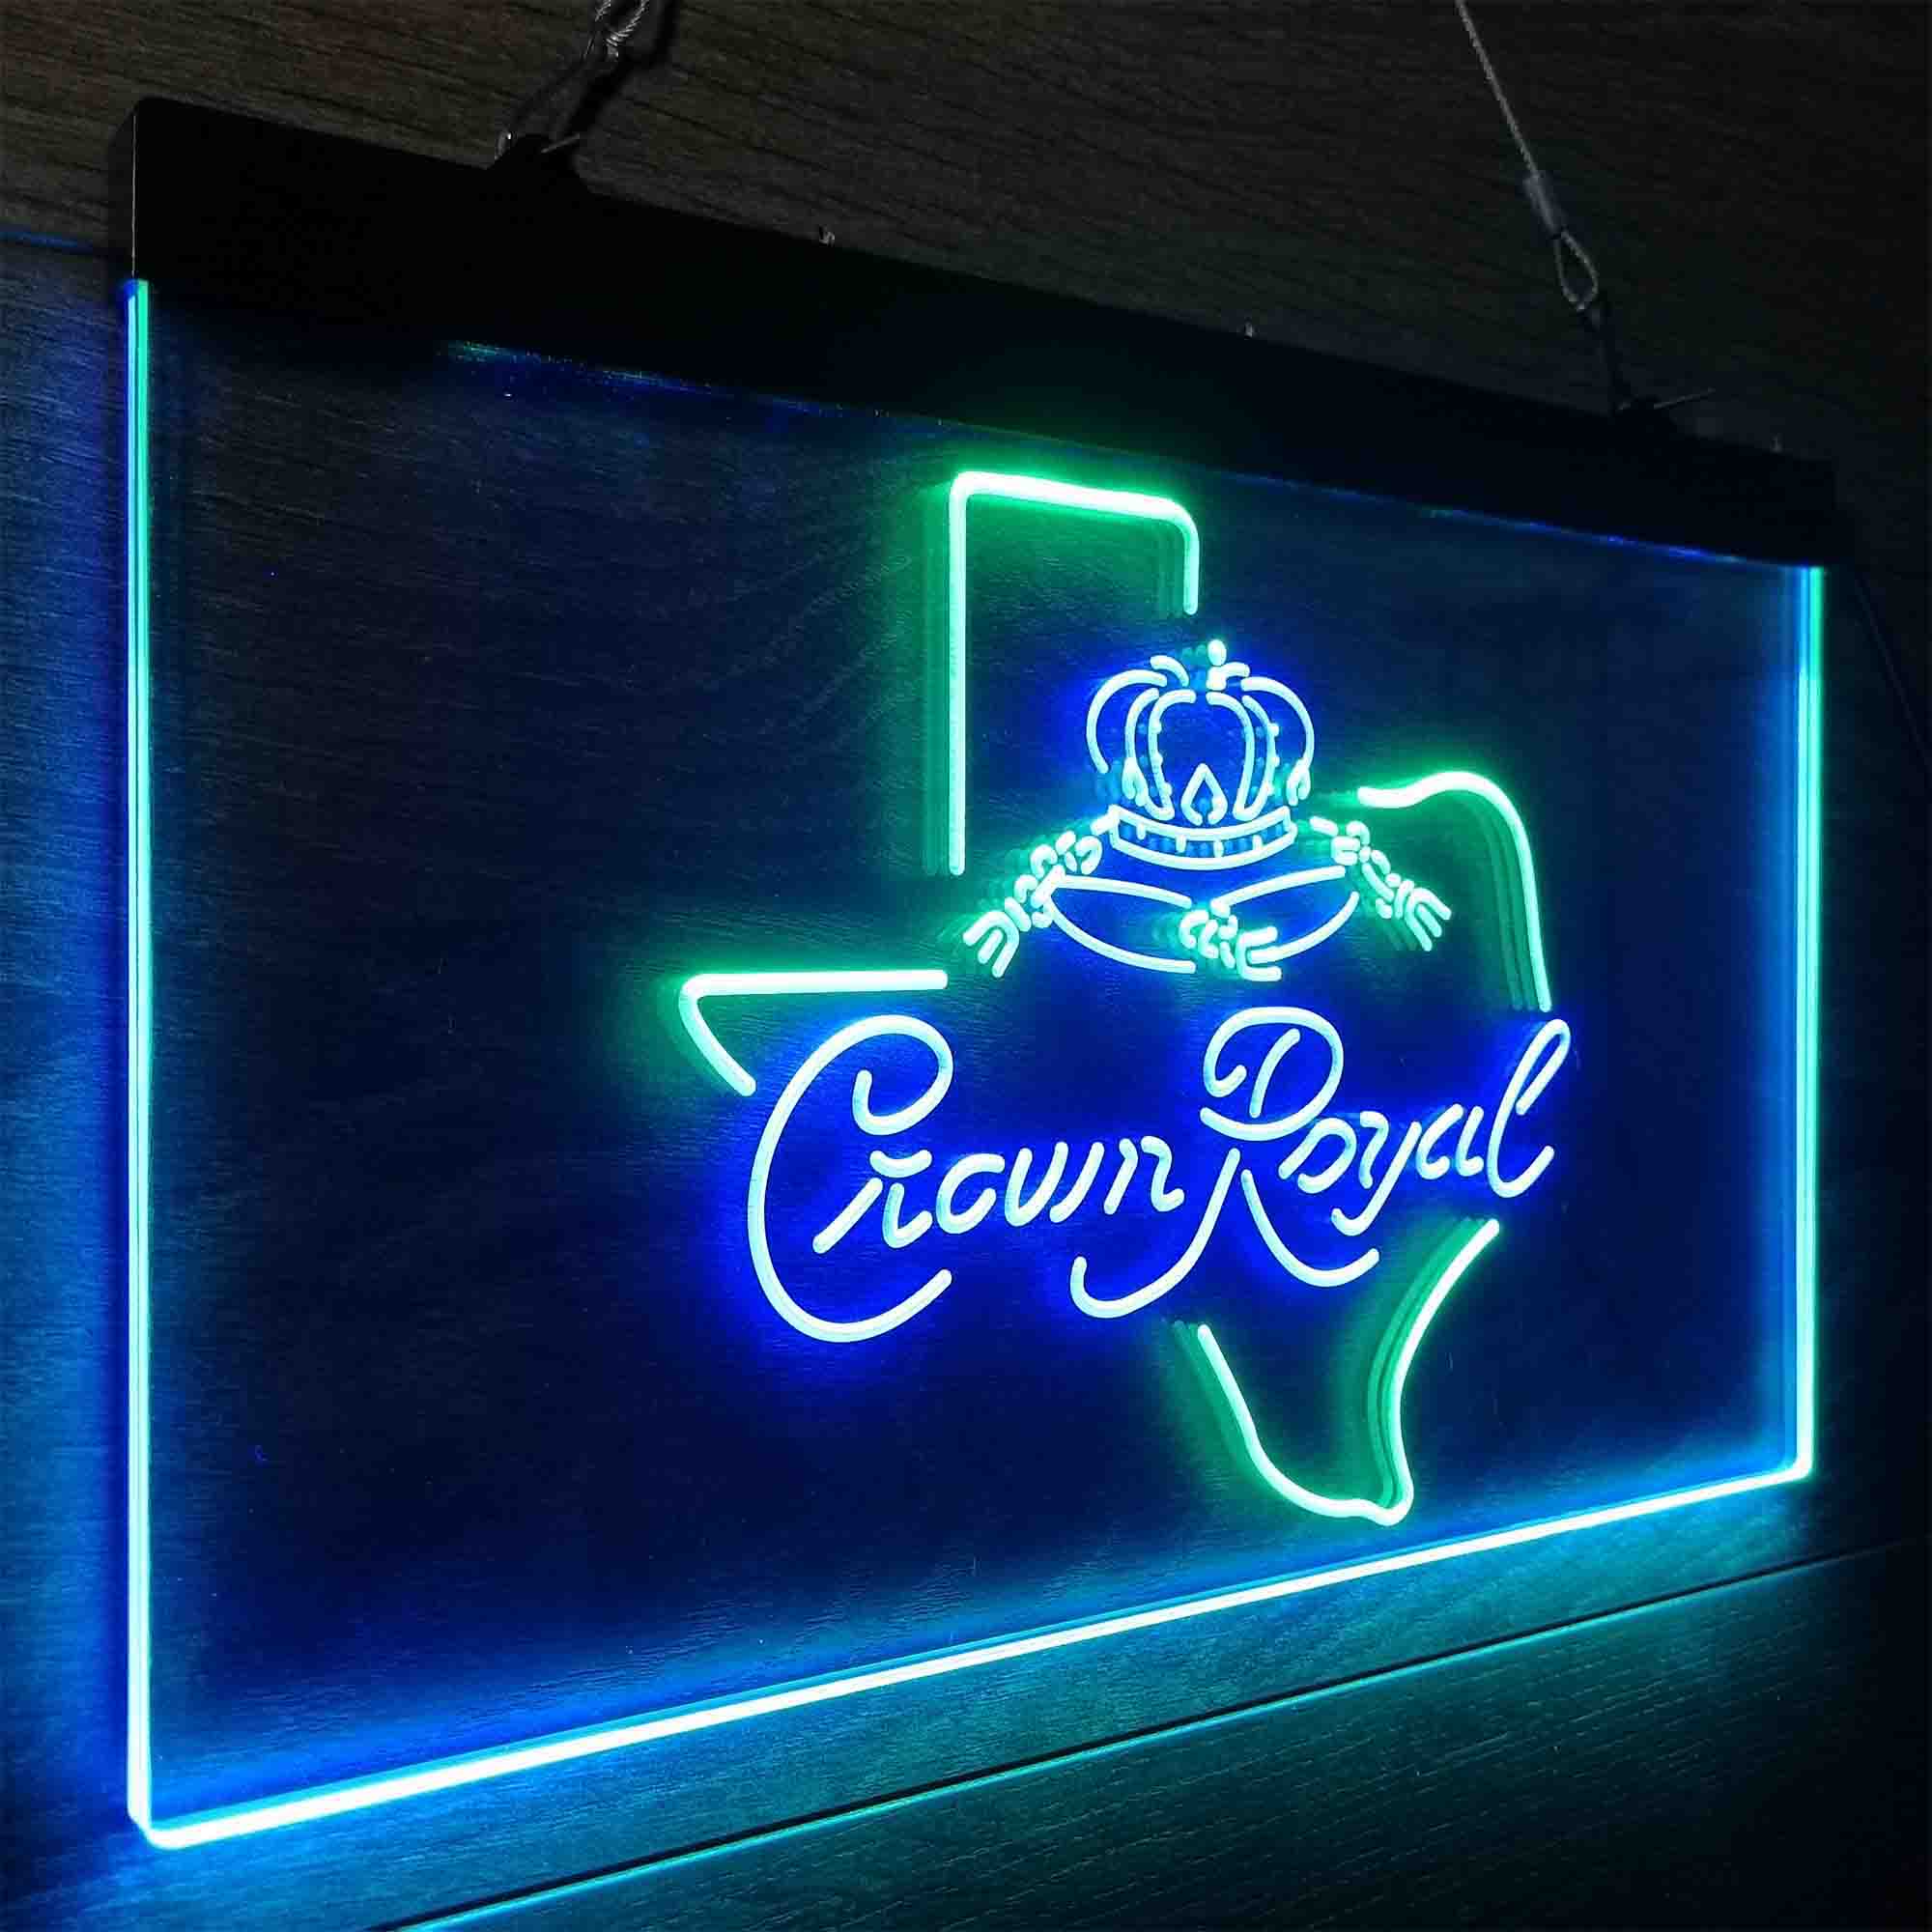 Crown Royal Texas Star Neon-Like LED Sign